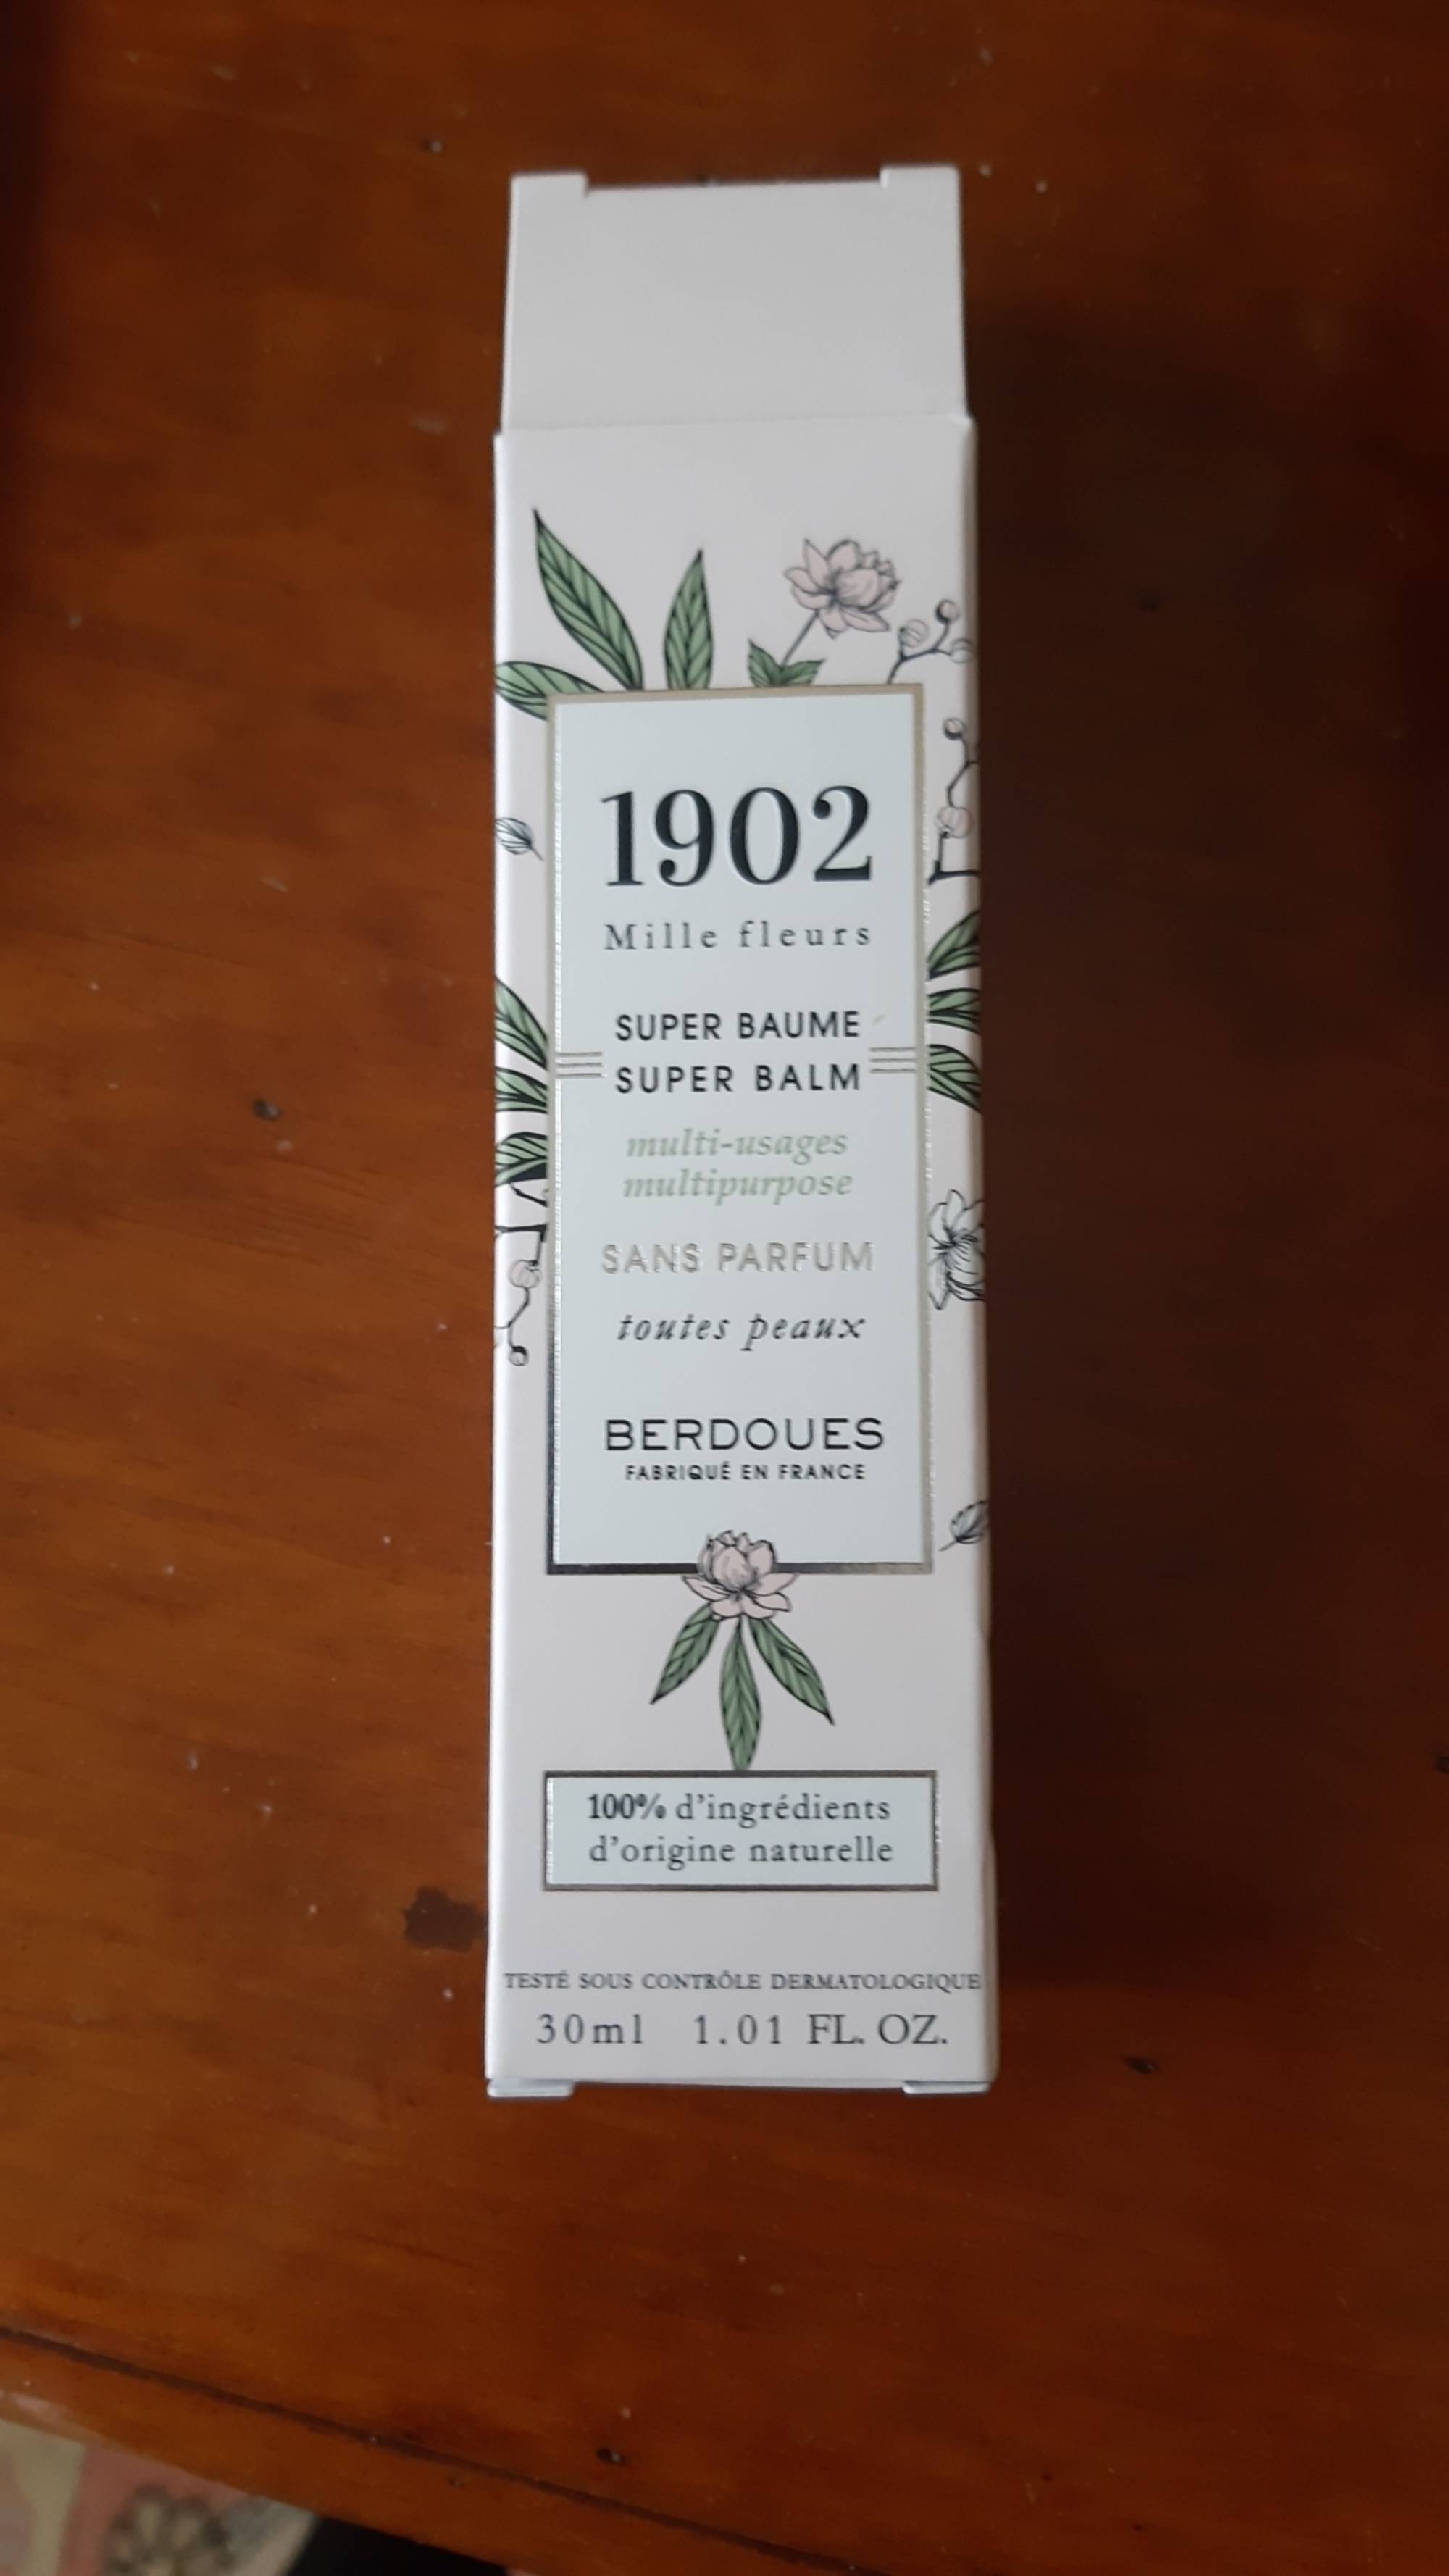 BERDOUES - 1902 Mille fleurs - Super baume multi-usage sans parfum